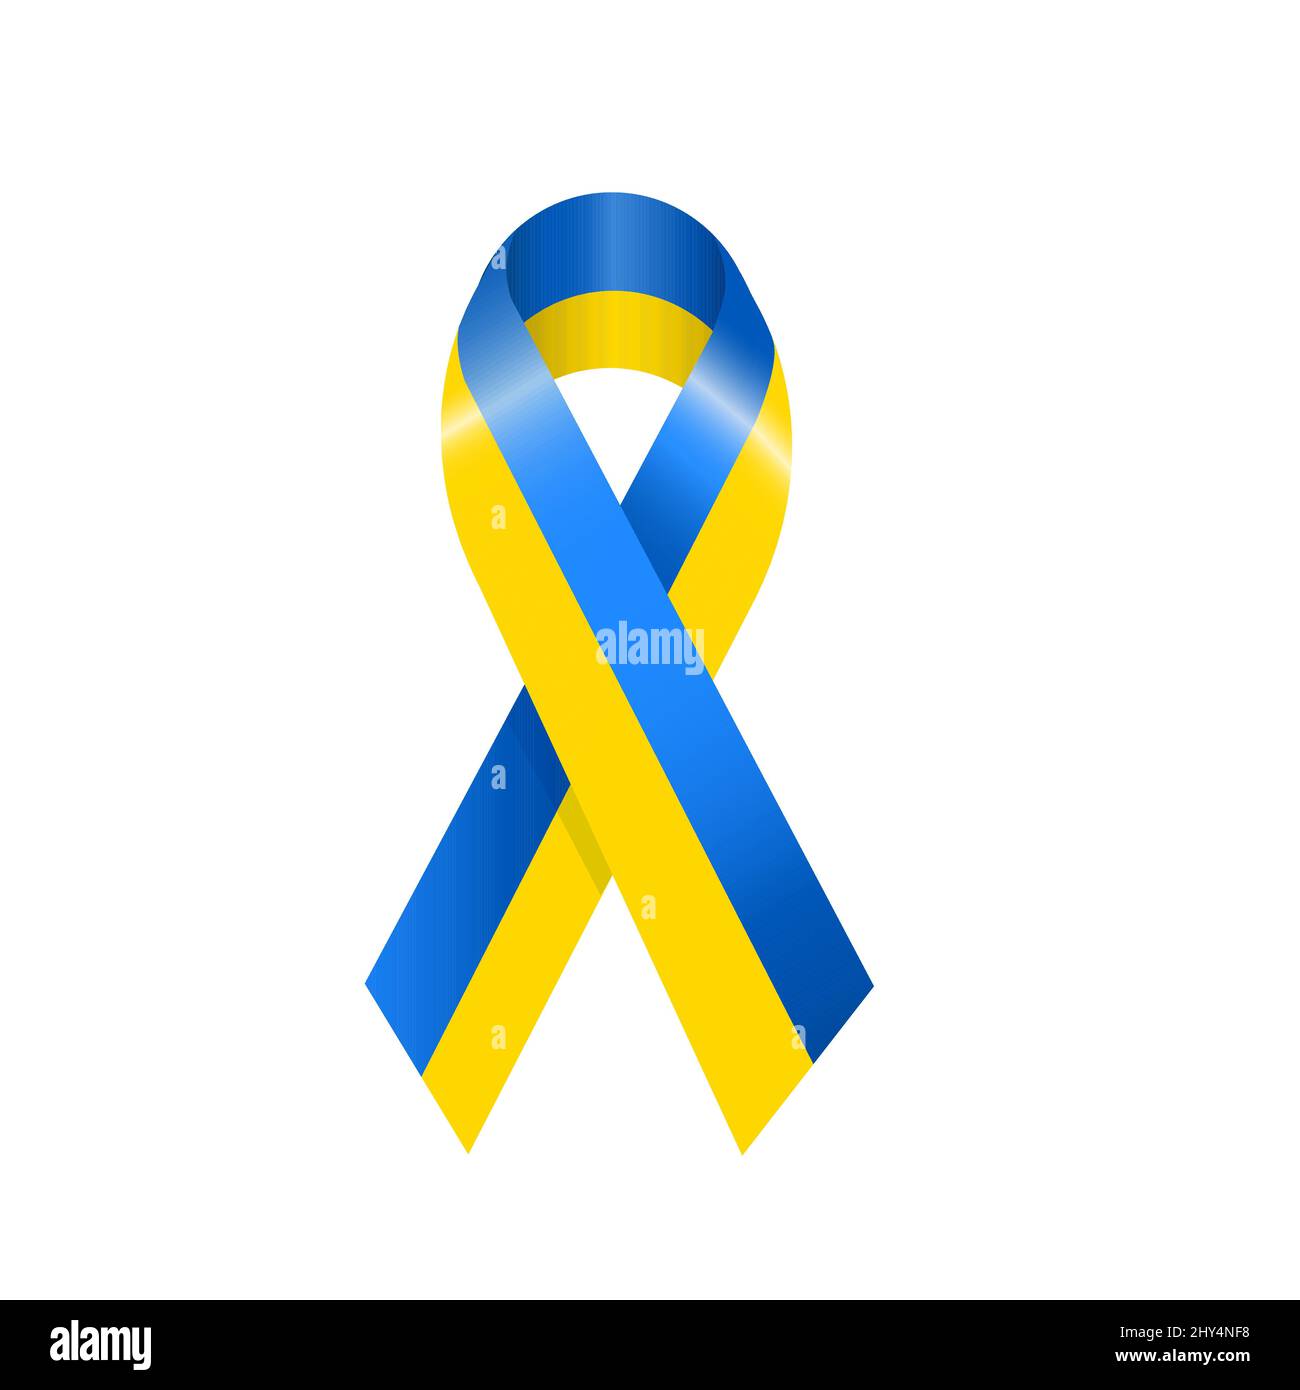 Bandiera del nastro dell'Ucraina. Illustrazione vettoriale della bandiera del nastro Ucraina in blu e giallo. Simbolo di indipendenza e libertà per l'isola Ucraina Illustrazione Vettoriale